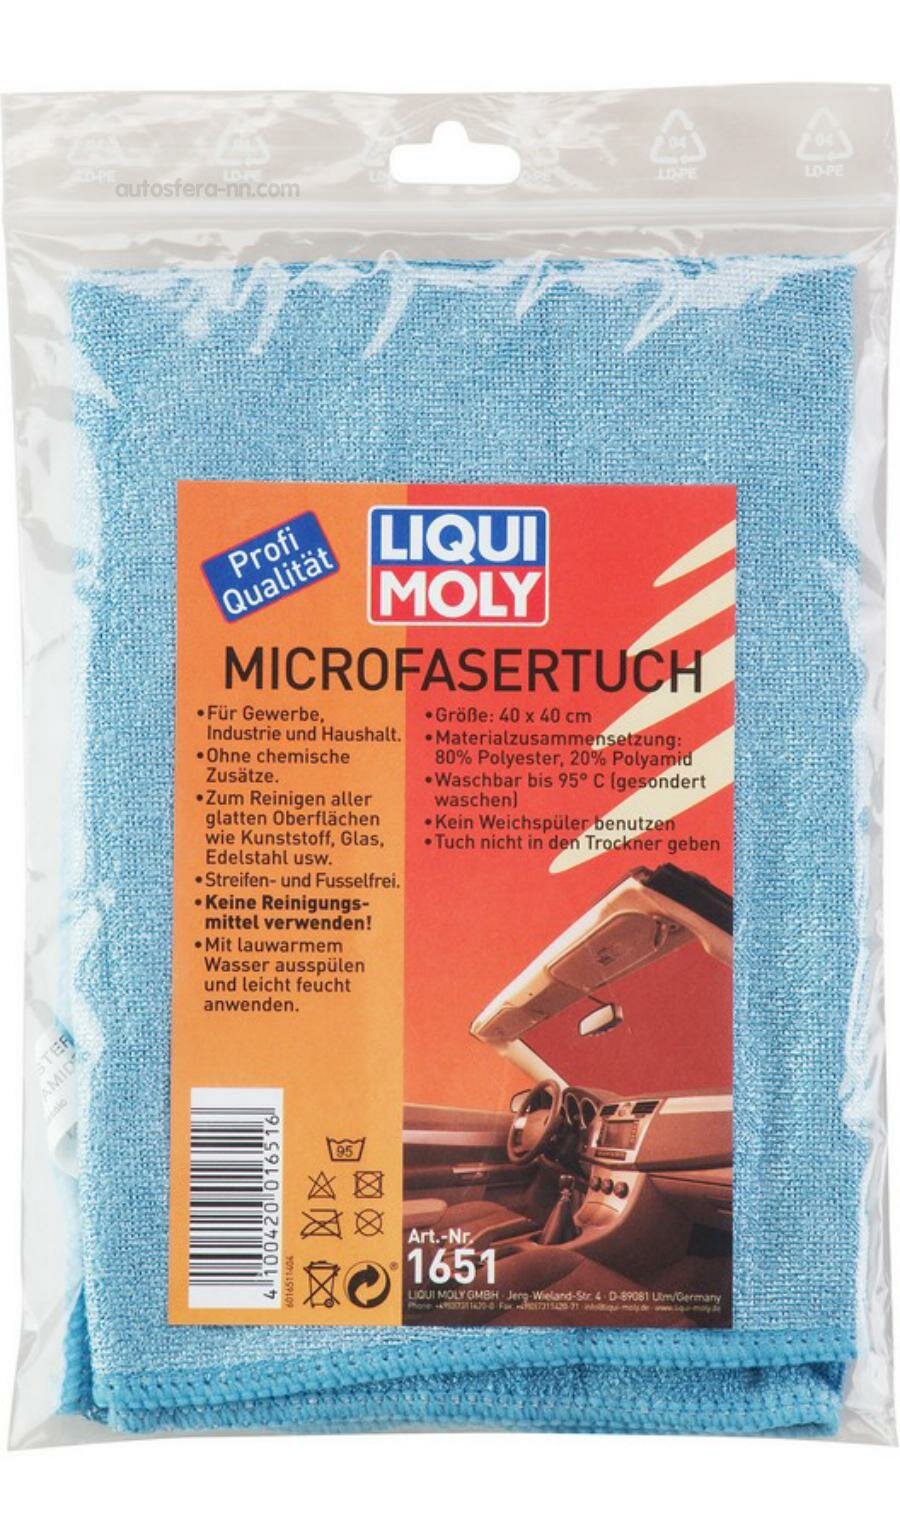 LIQUI MOLY 1651 Универсальный платок из микрофибры Microfasertuch